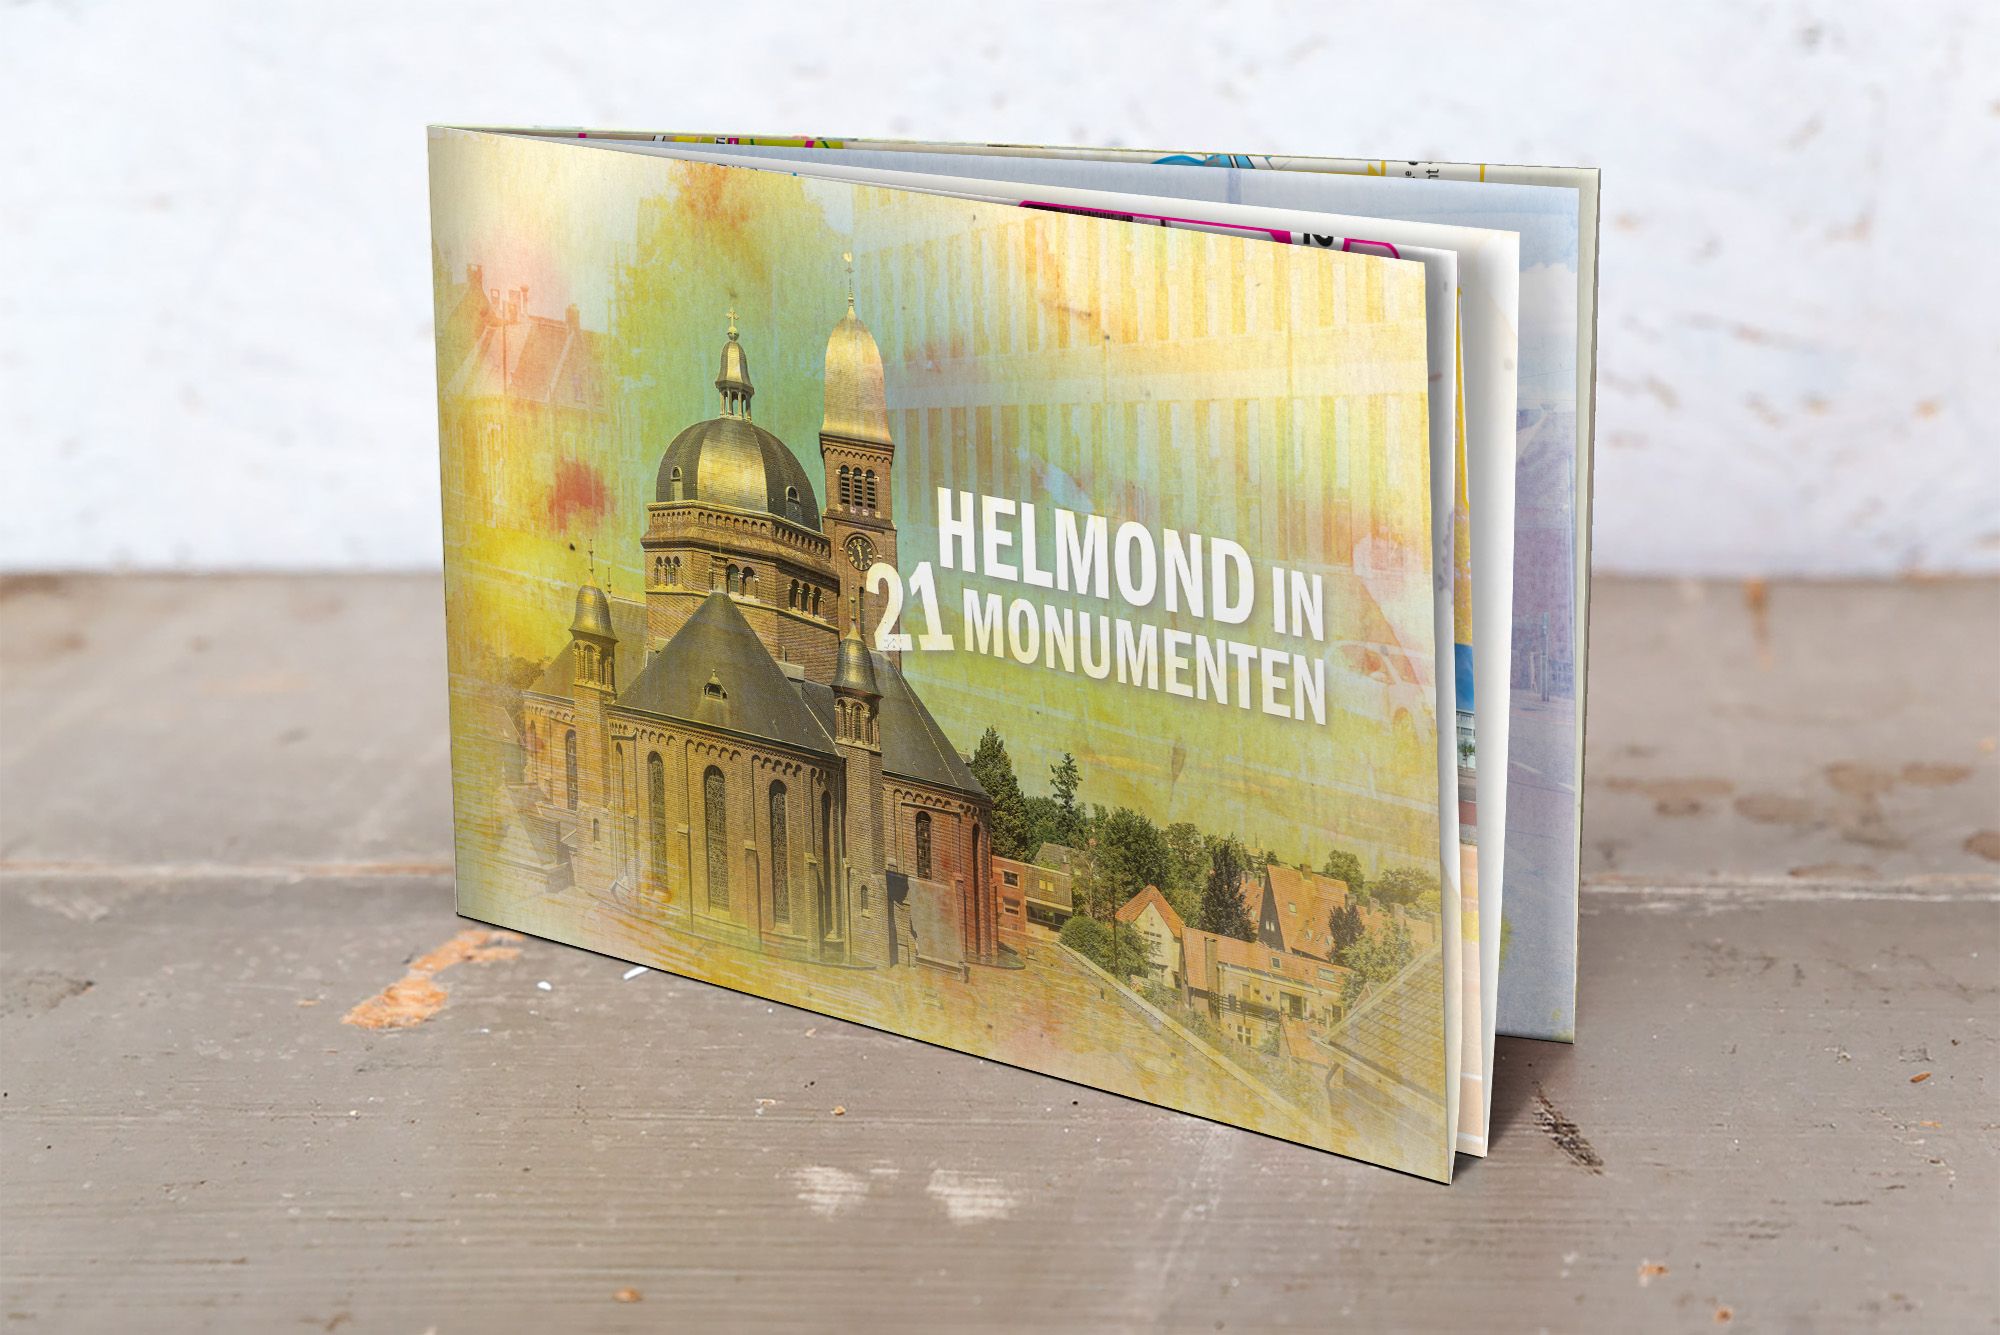 Helmond in 21 monumenten omslag